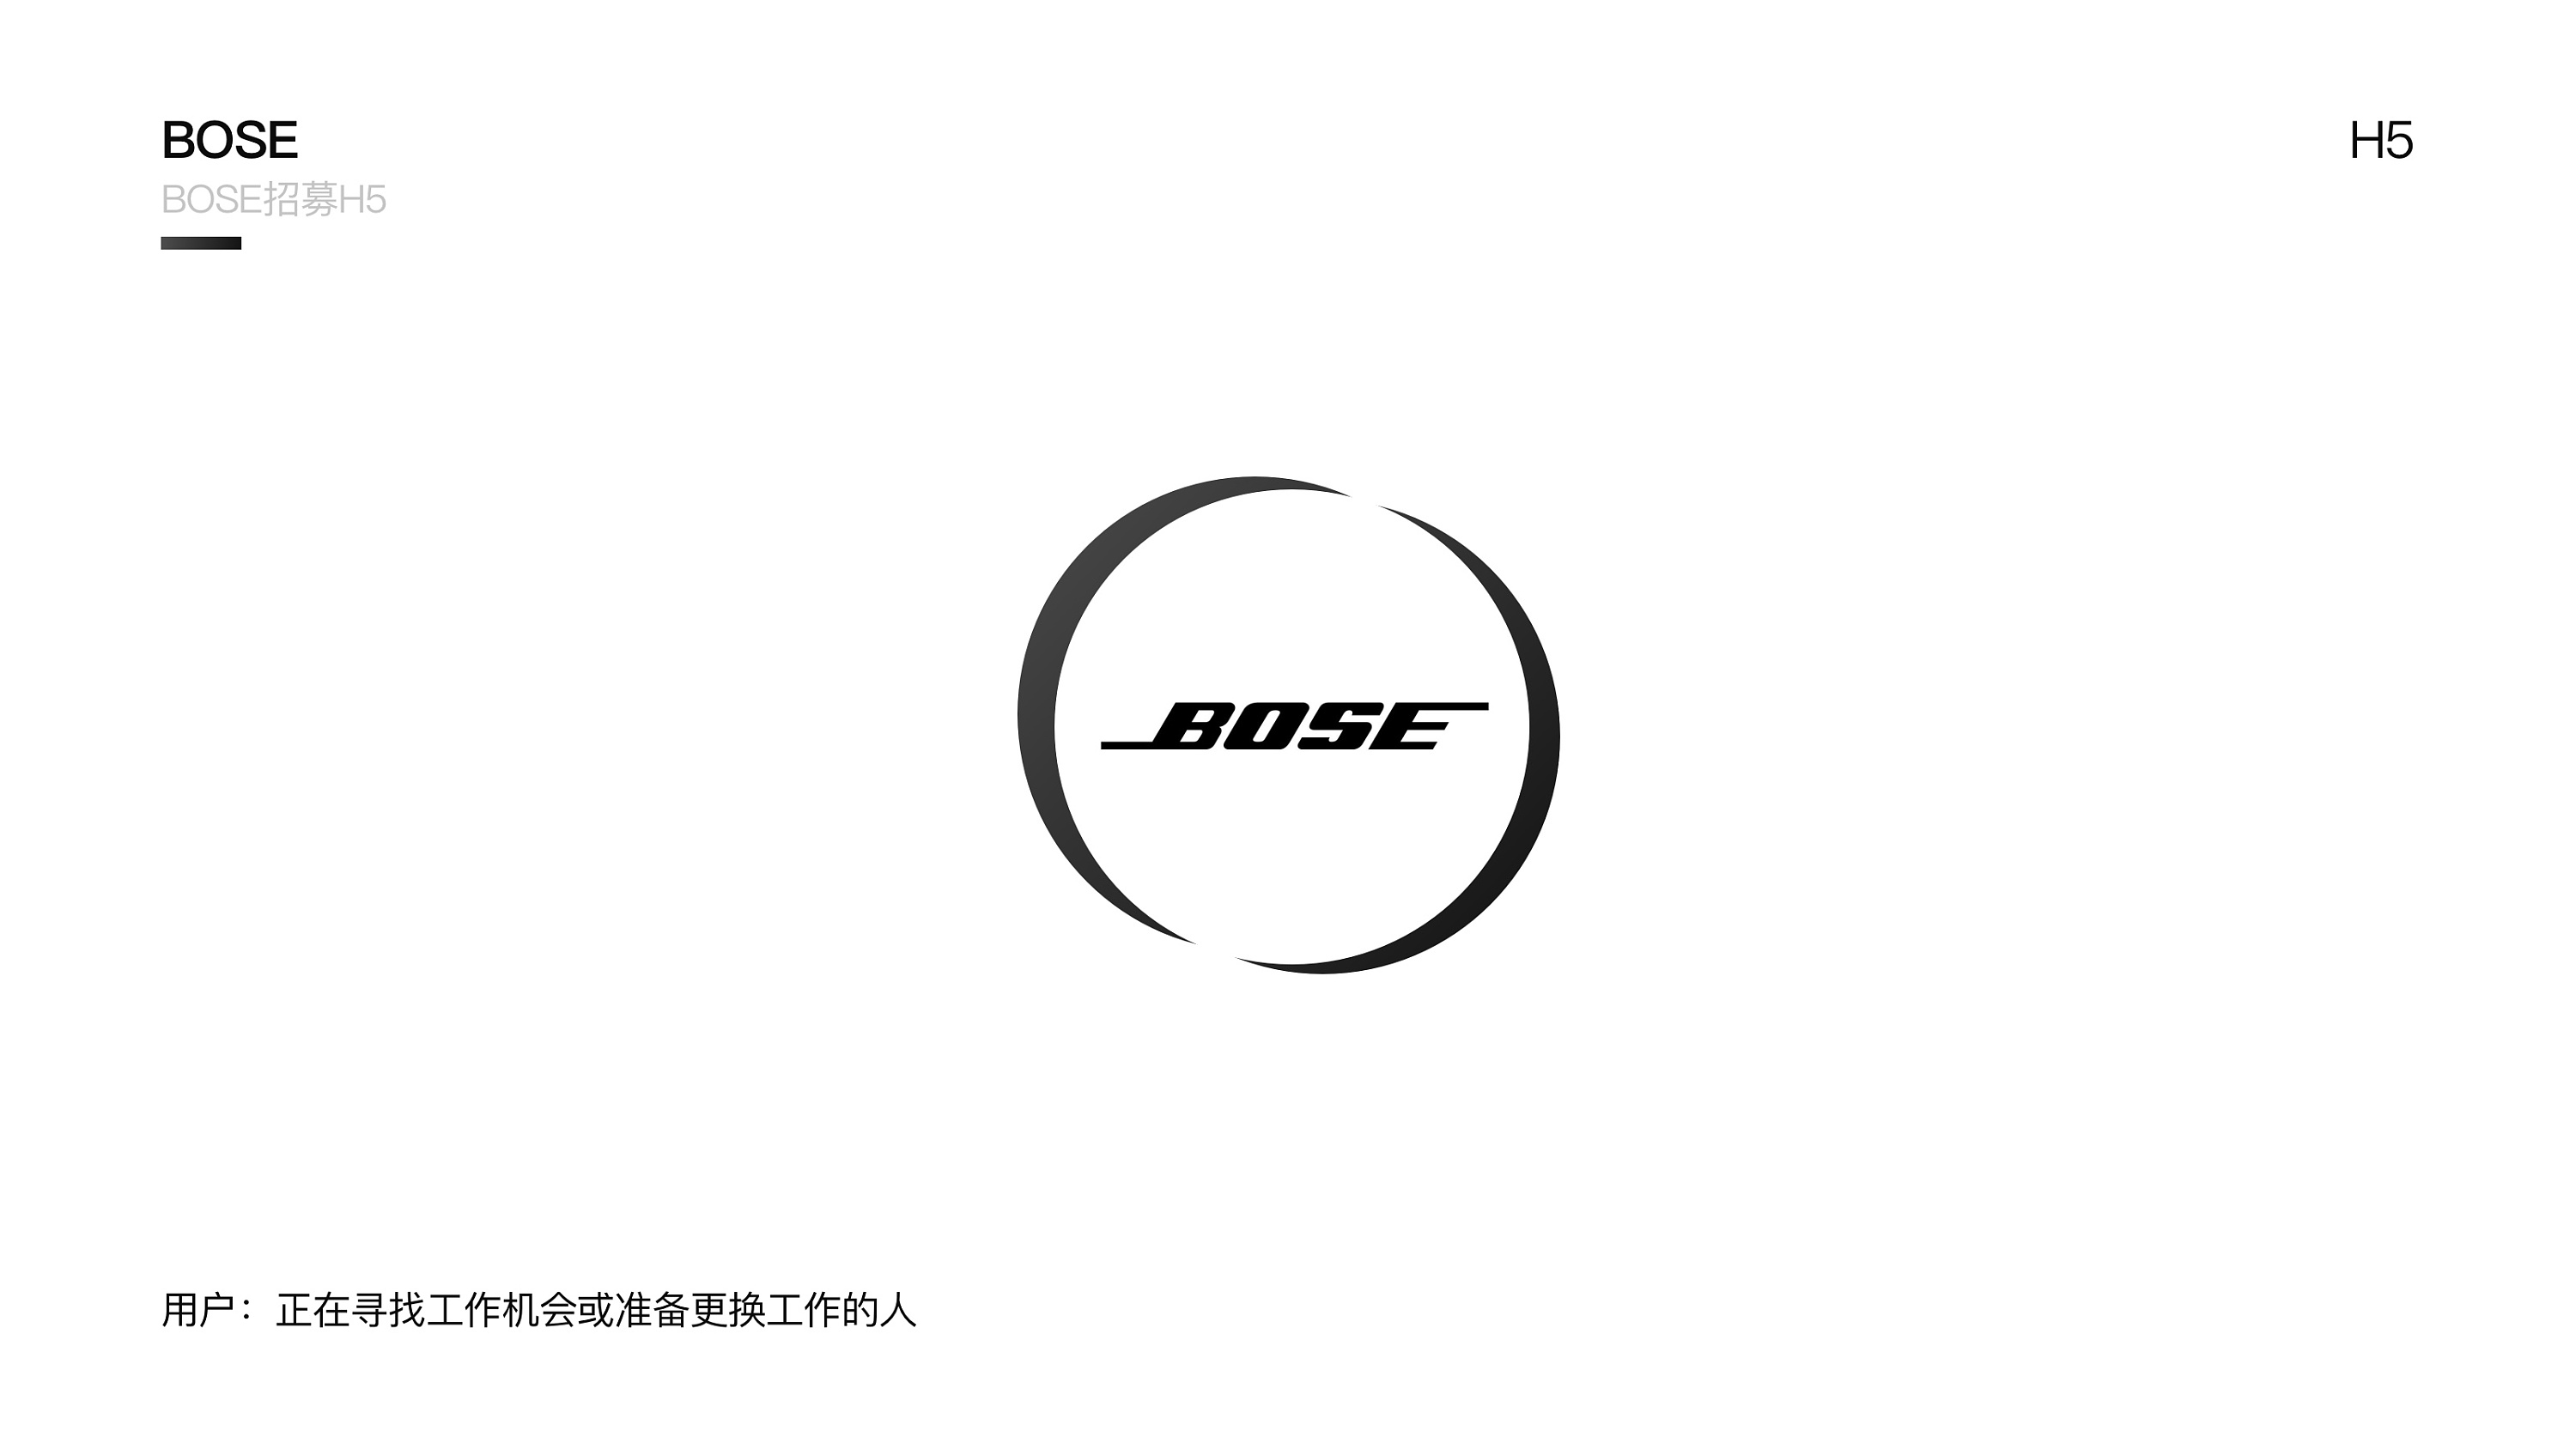 bose耳机logo图片